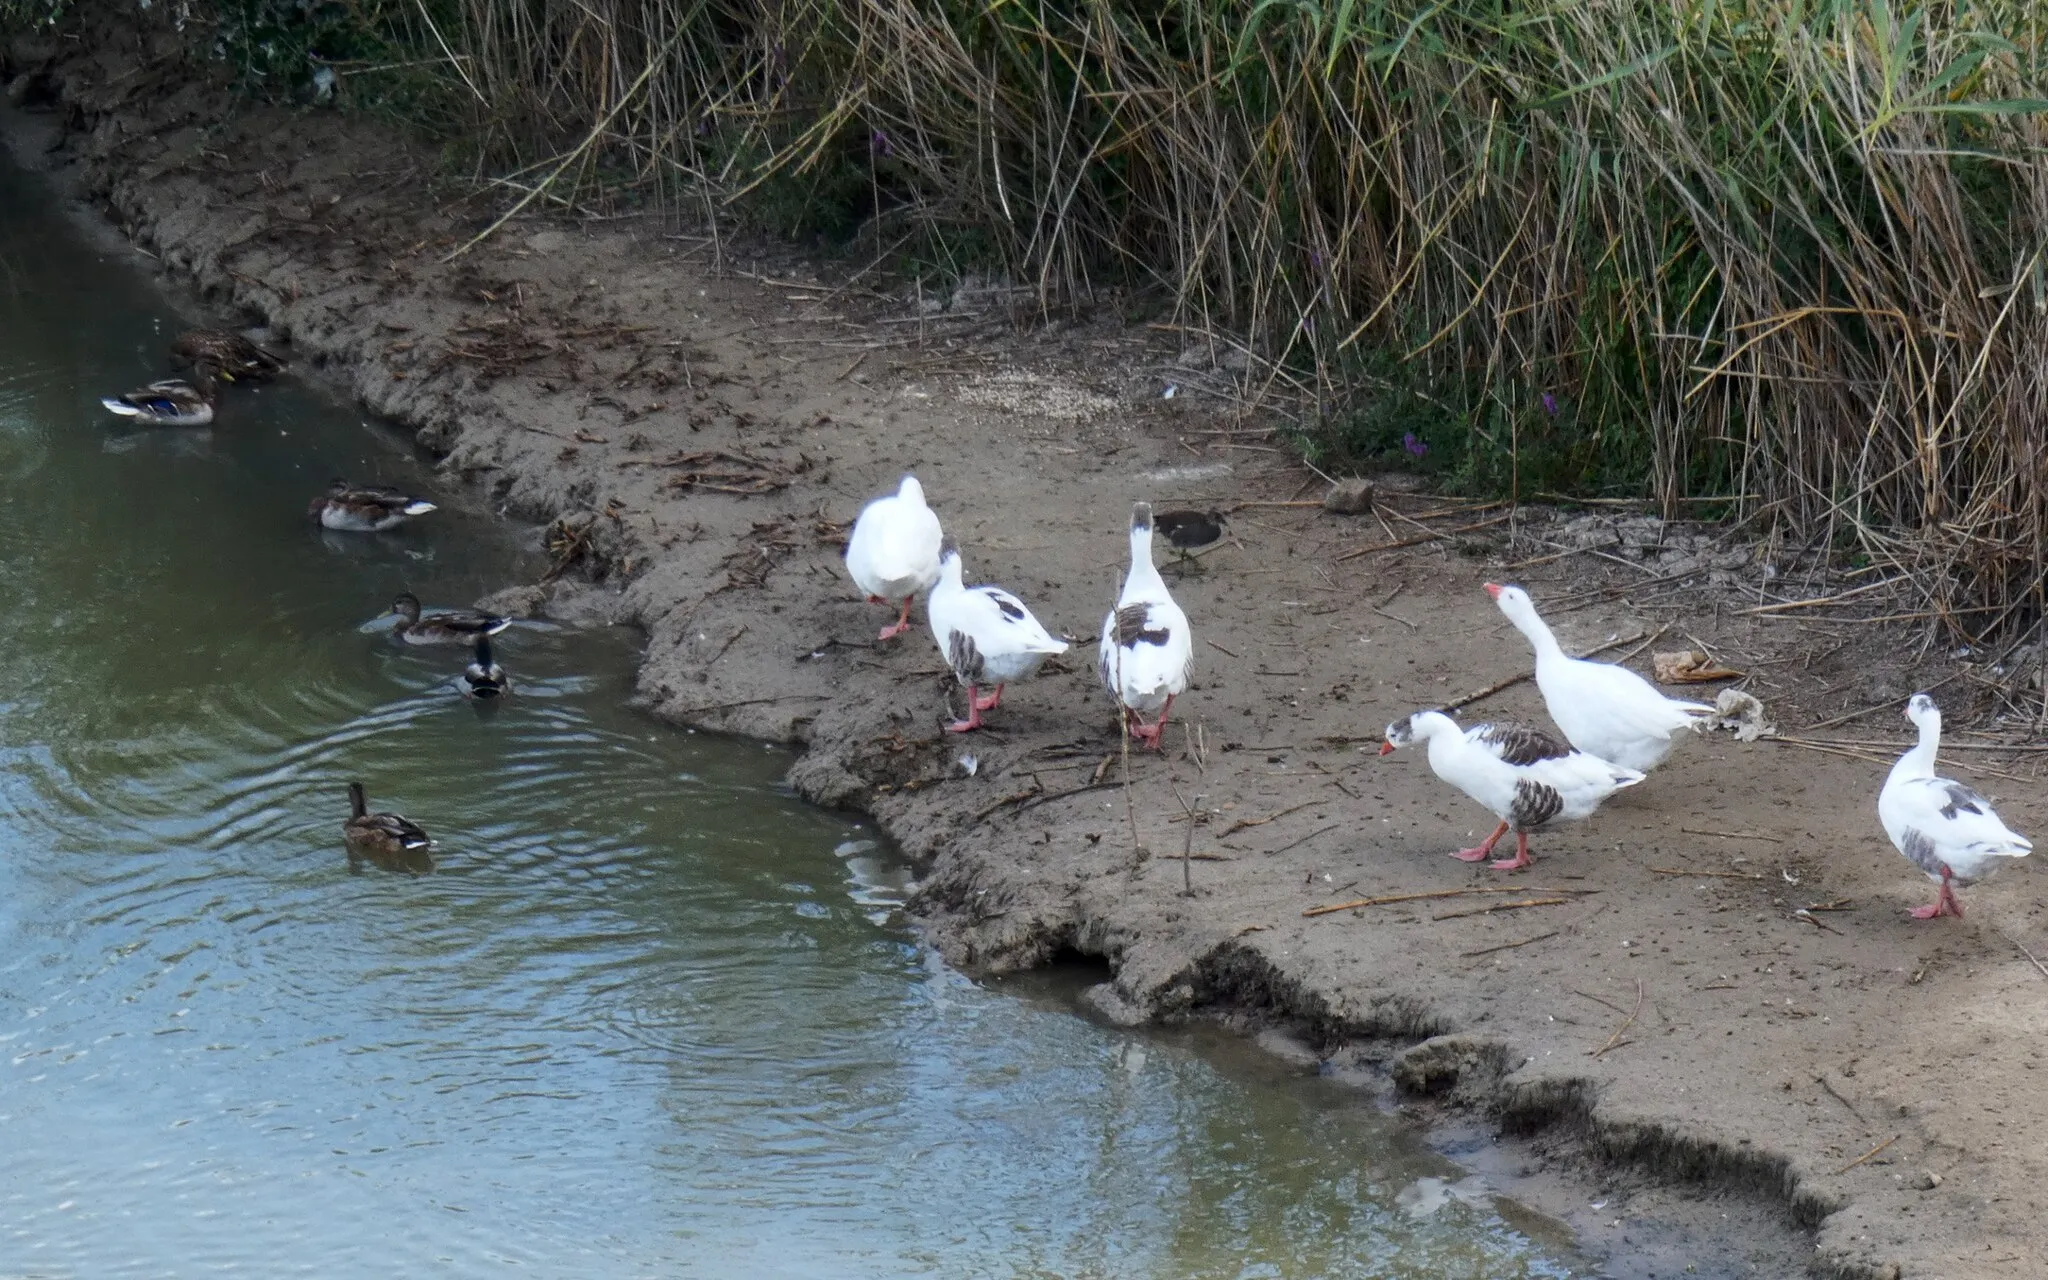 Photo showing: Parece que se han puesto de acuerdo y los patos dominan el agua mientras que las ocas ocupan la tierra.

P.D. Poco después las ocas se lanzaron al agua, aunque pacíficamente.